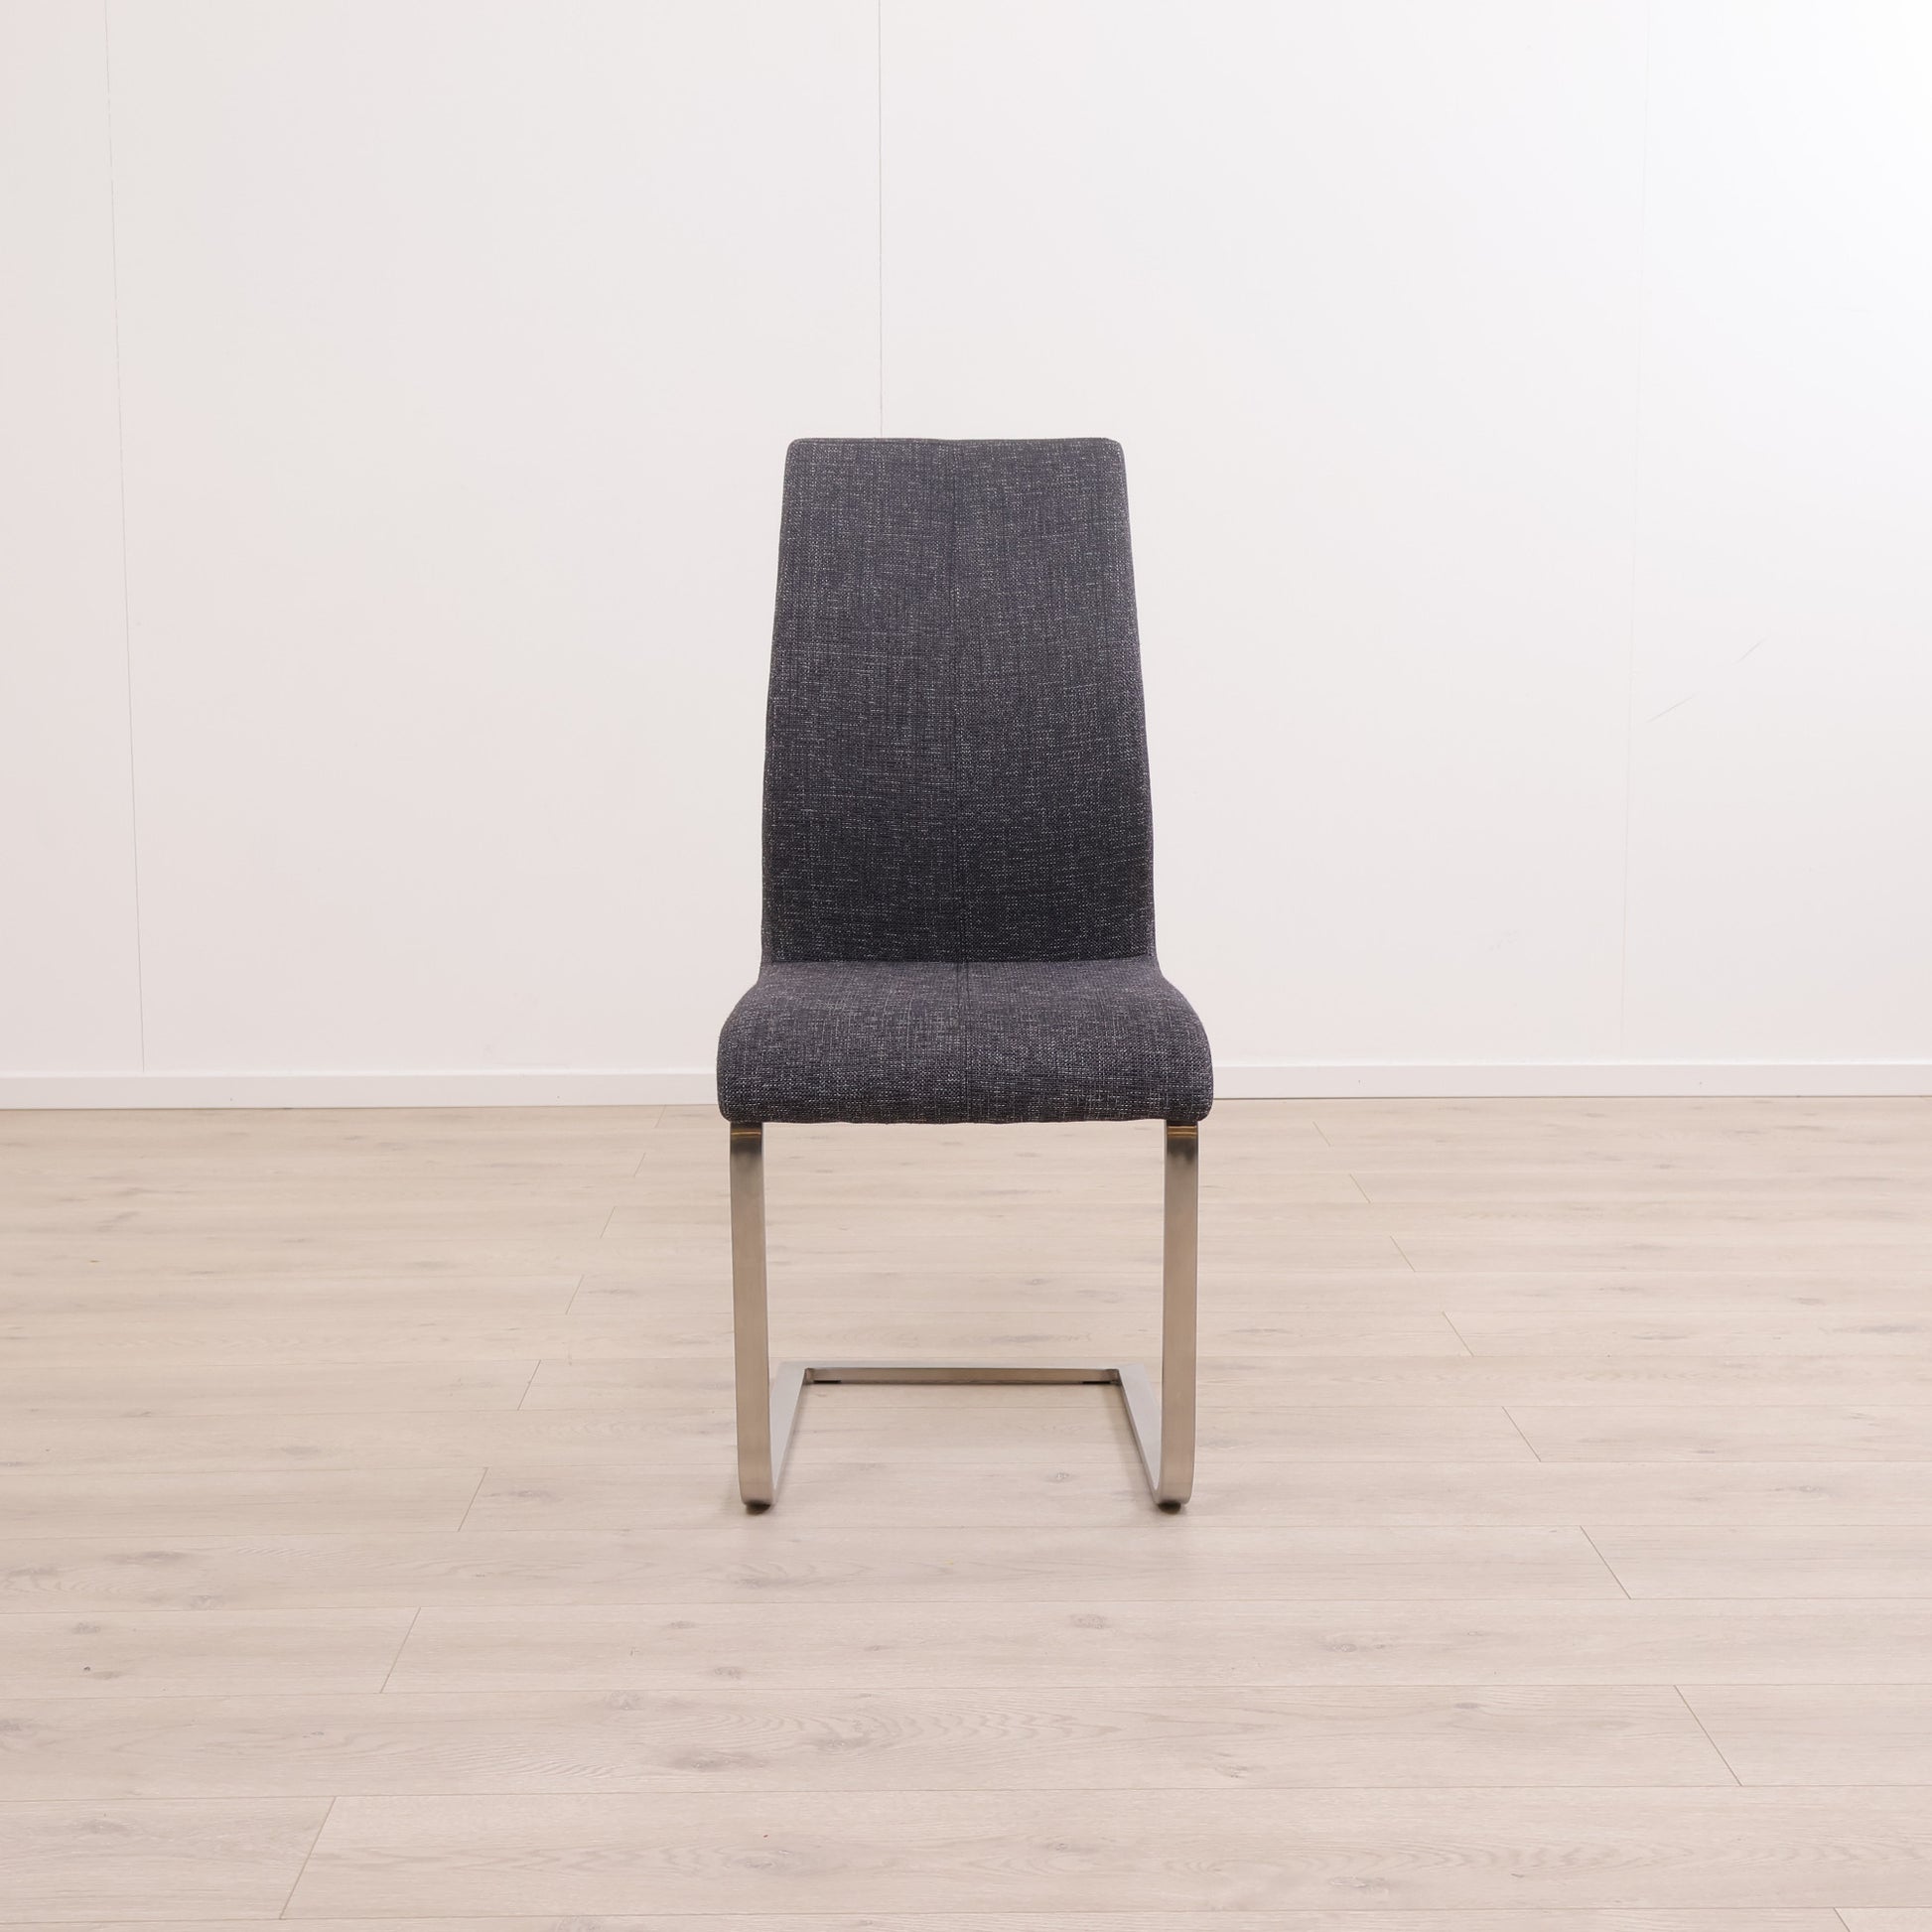 A-møbler spisestol i minimalistisk design